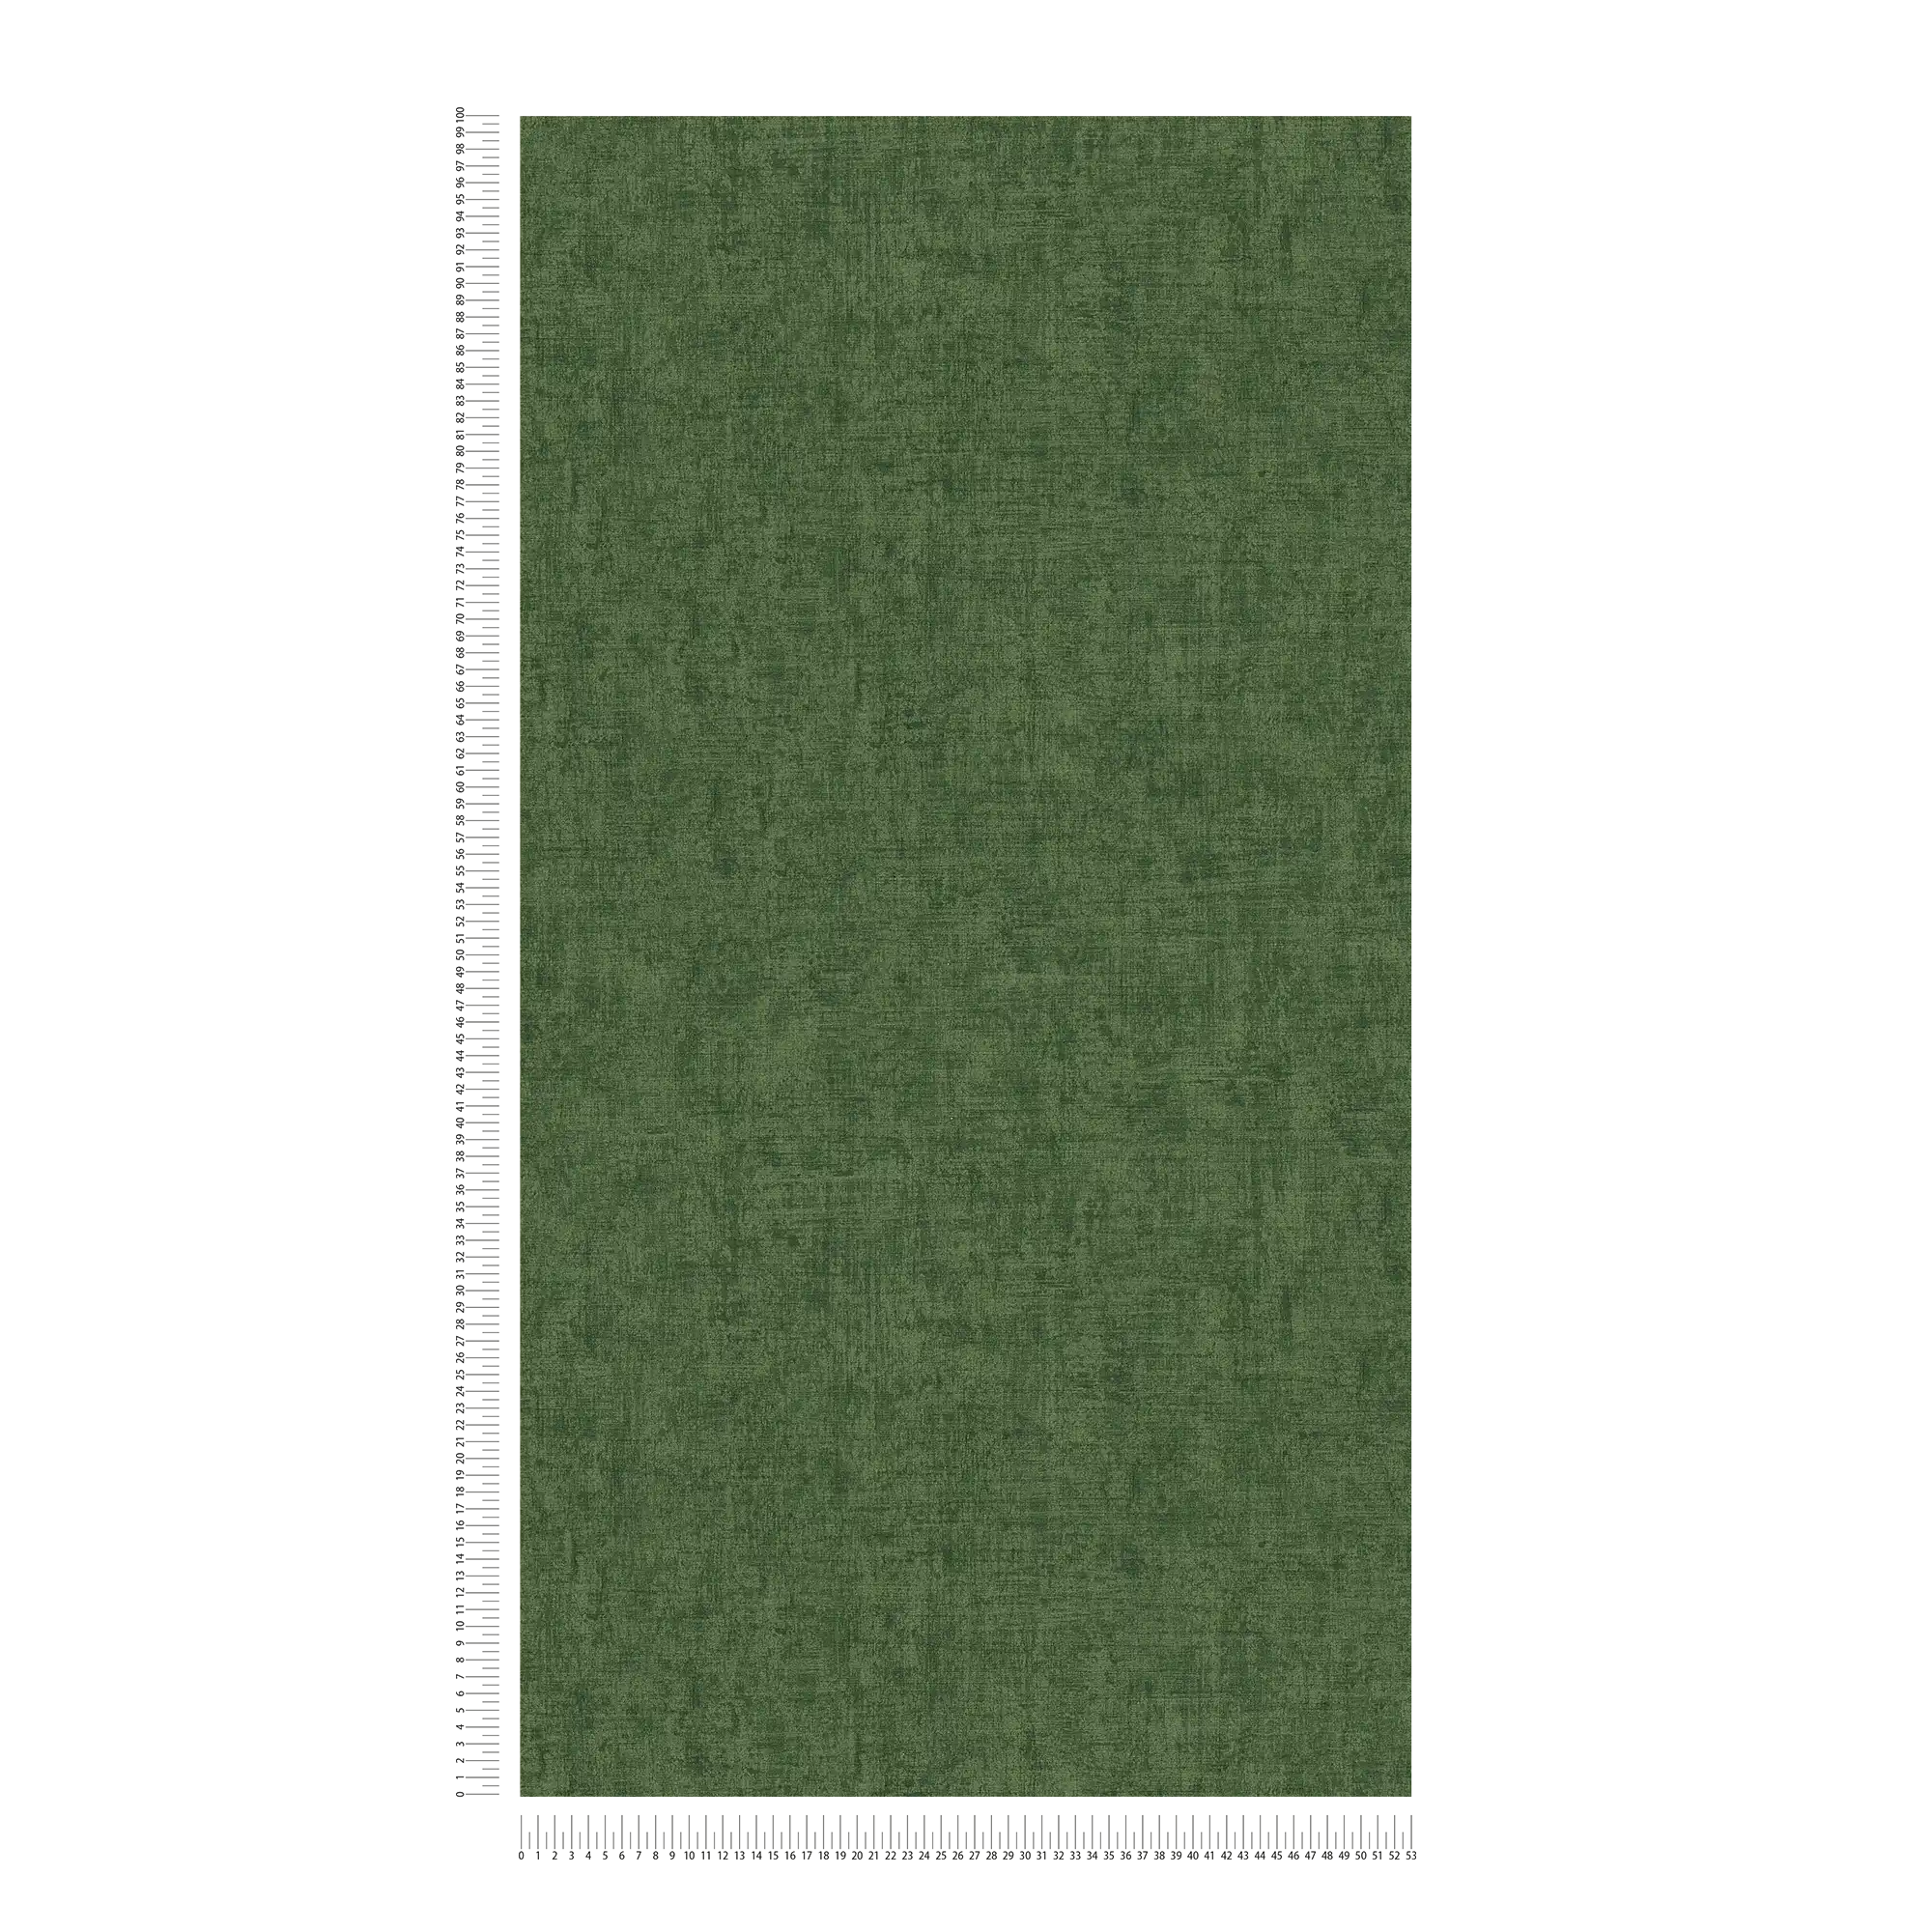             Melange unit behang jungle groen met structuur reliëf
        